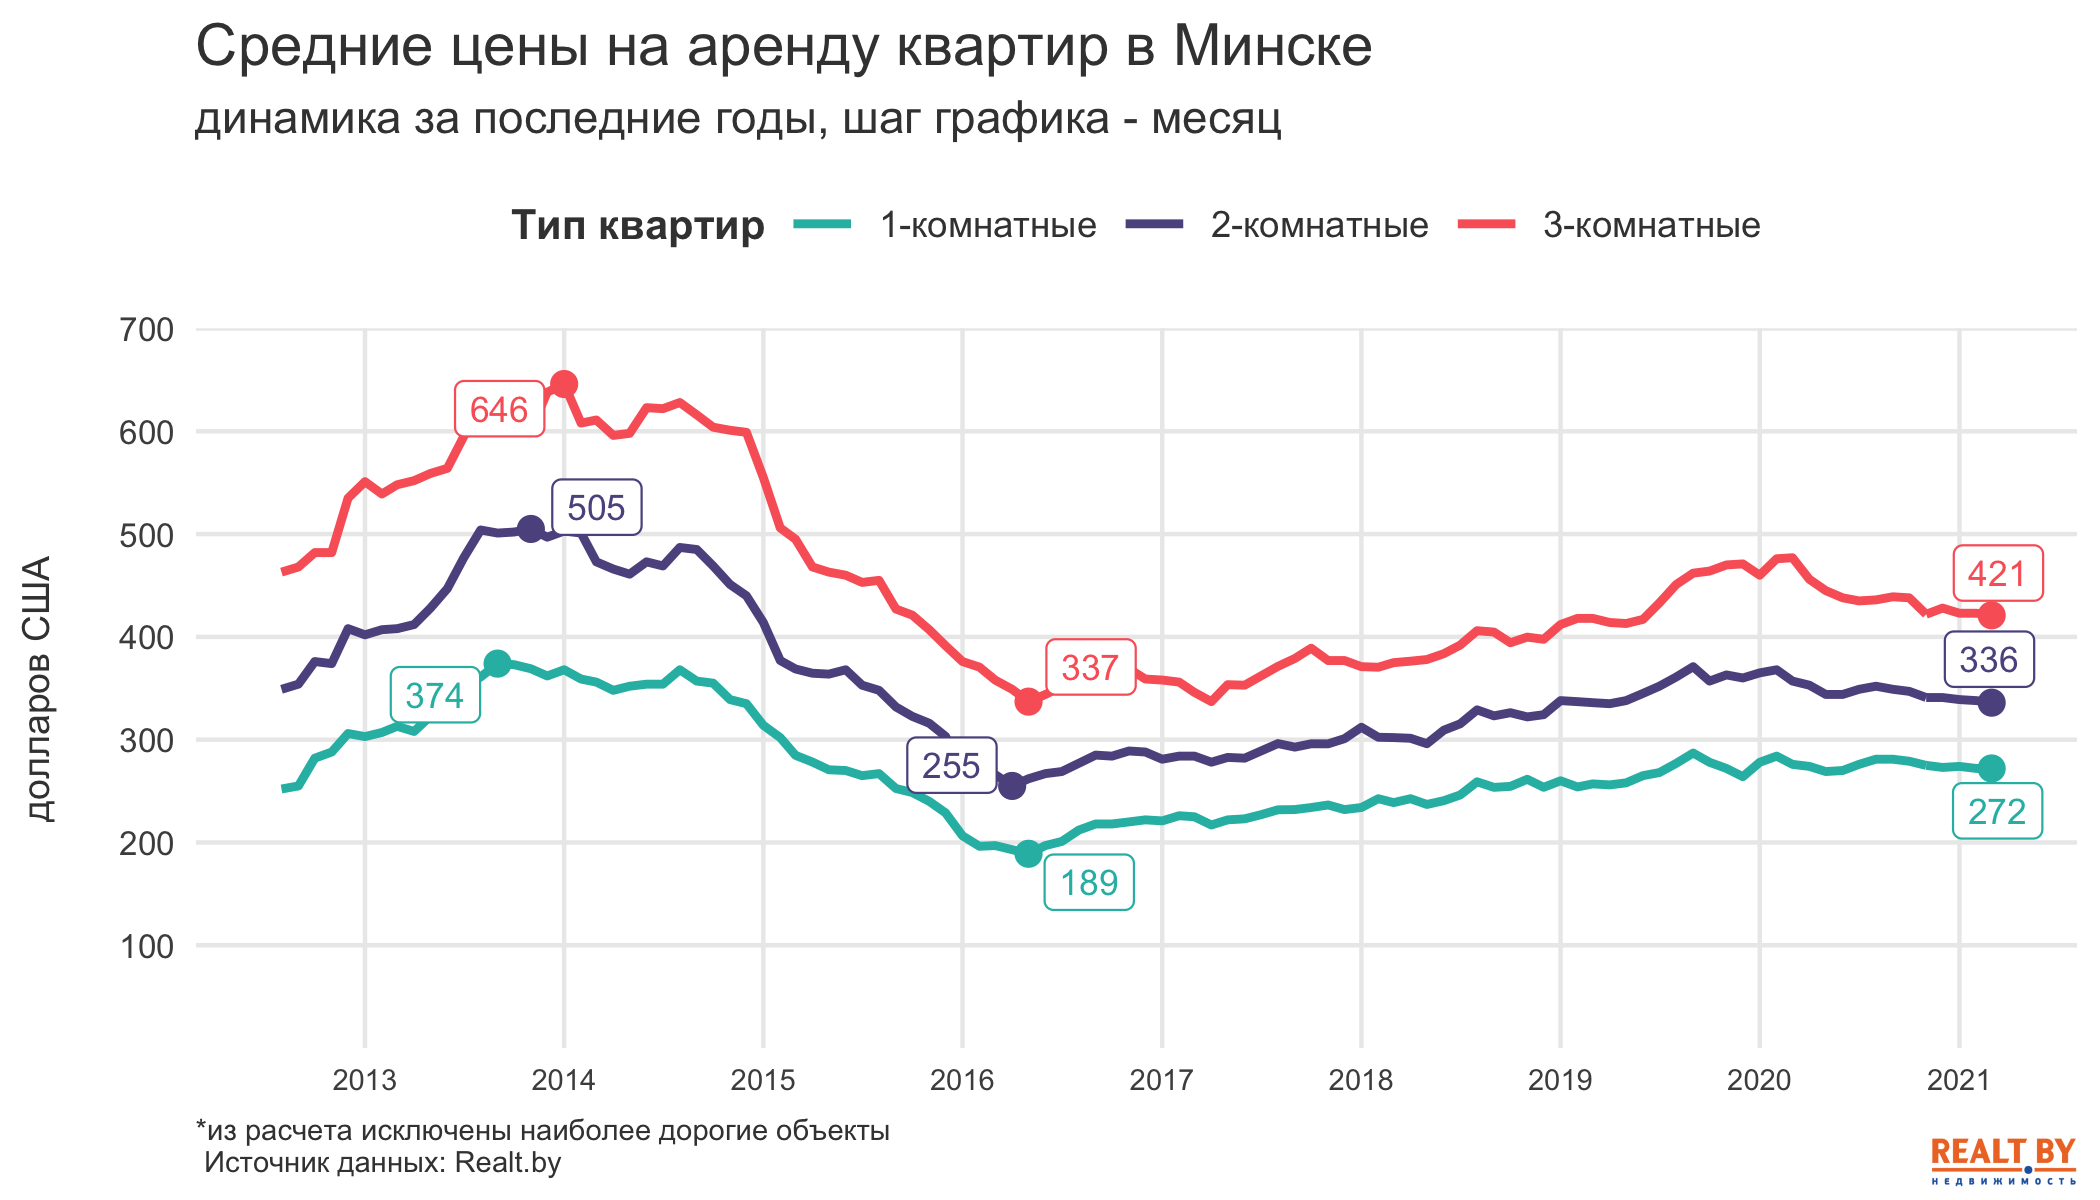 Немного подешевели только “двушки” и “трешки”. Обзор рынка аренды квартир в Минске за март 2021 года